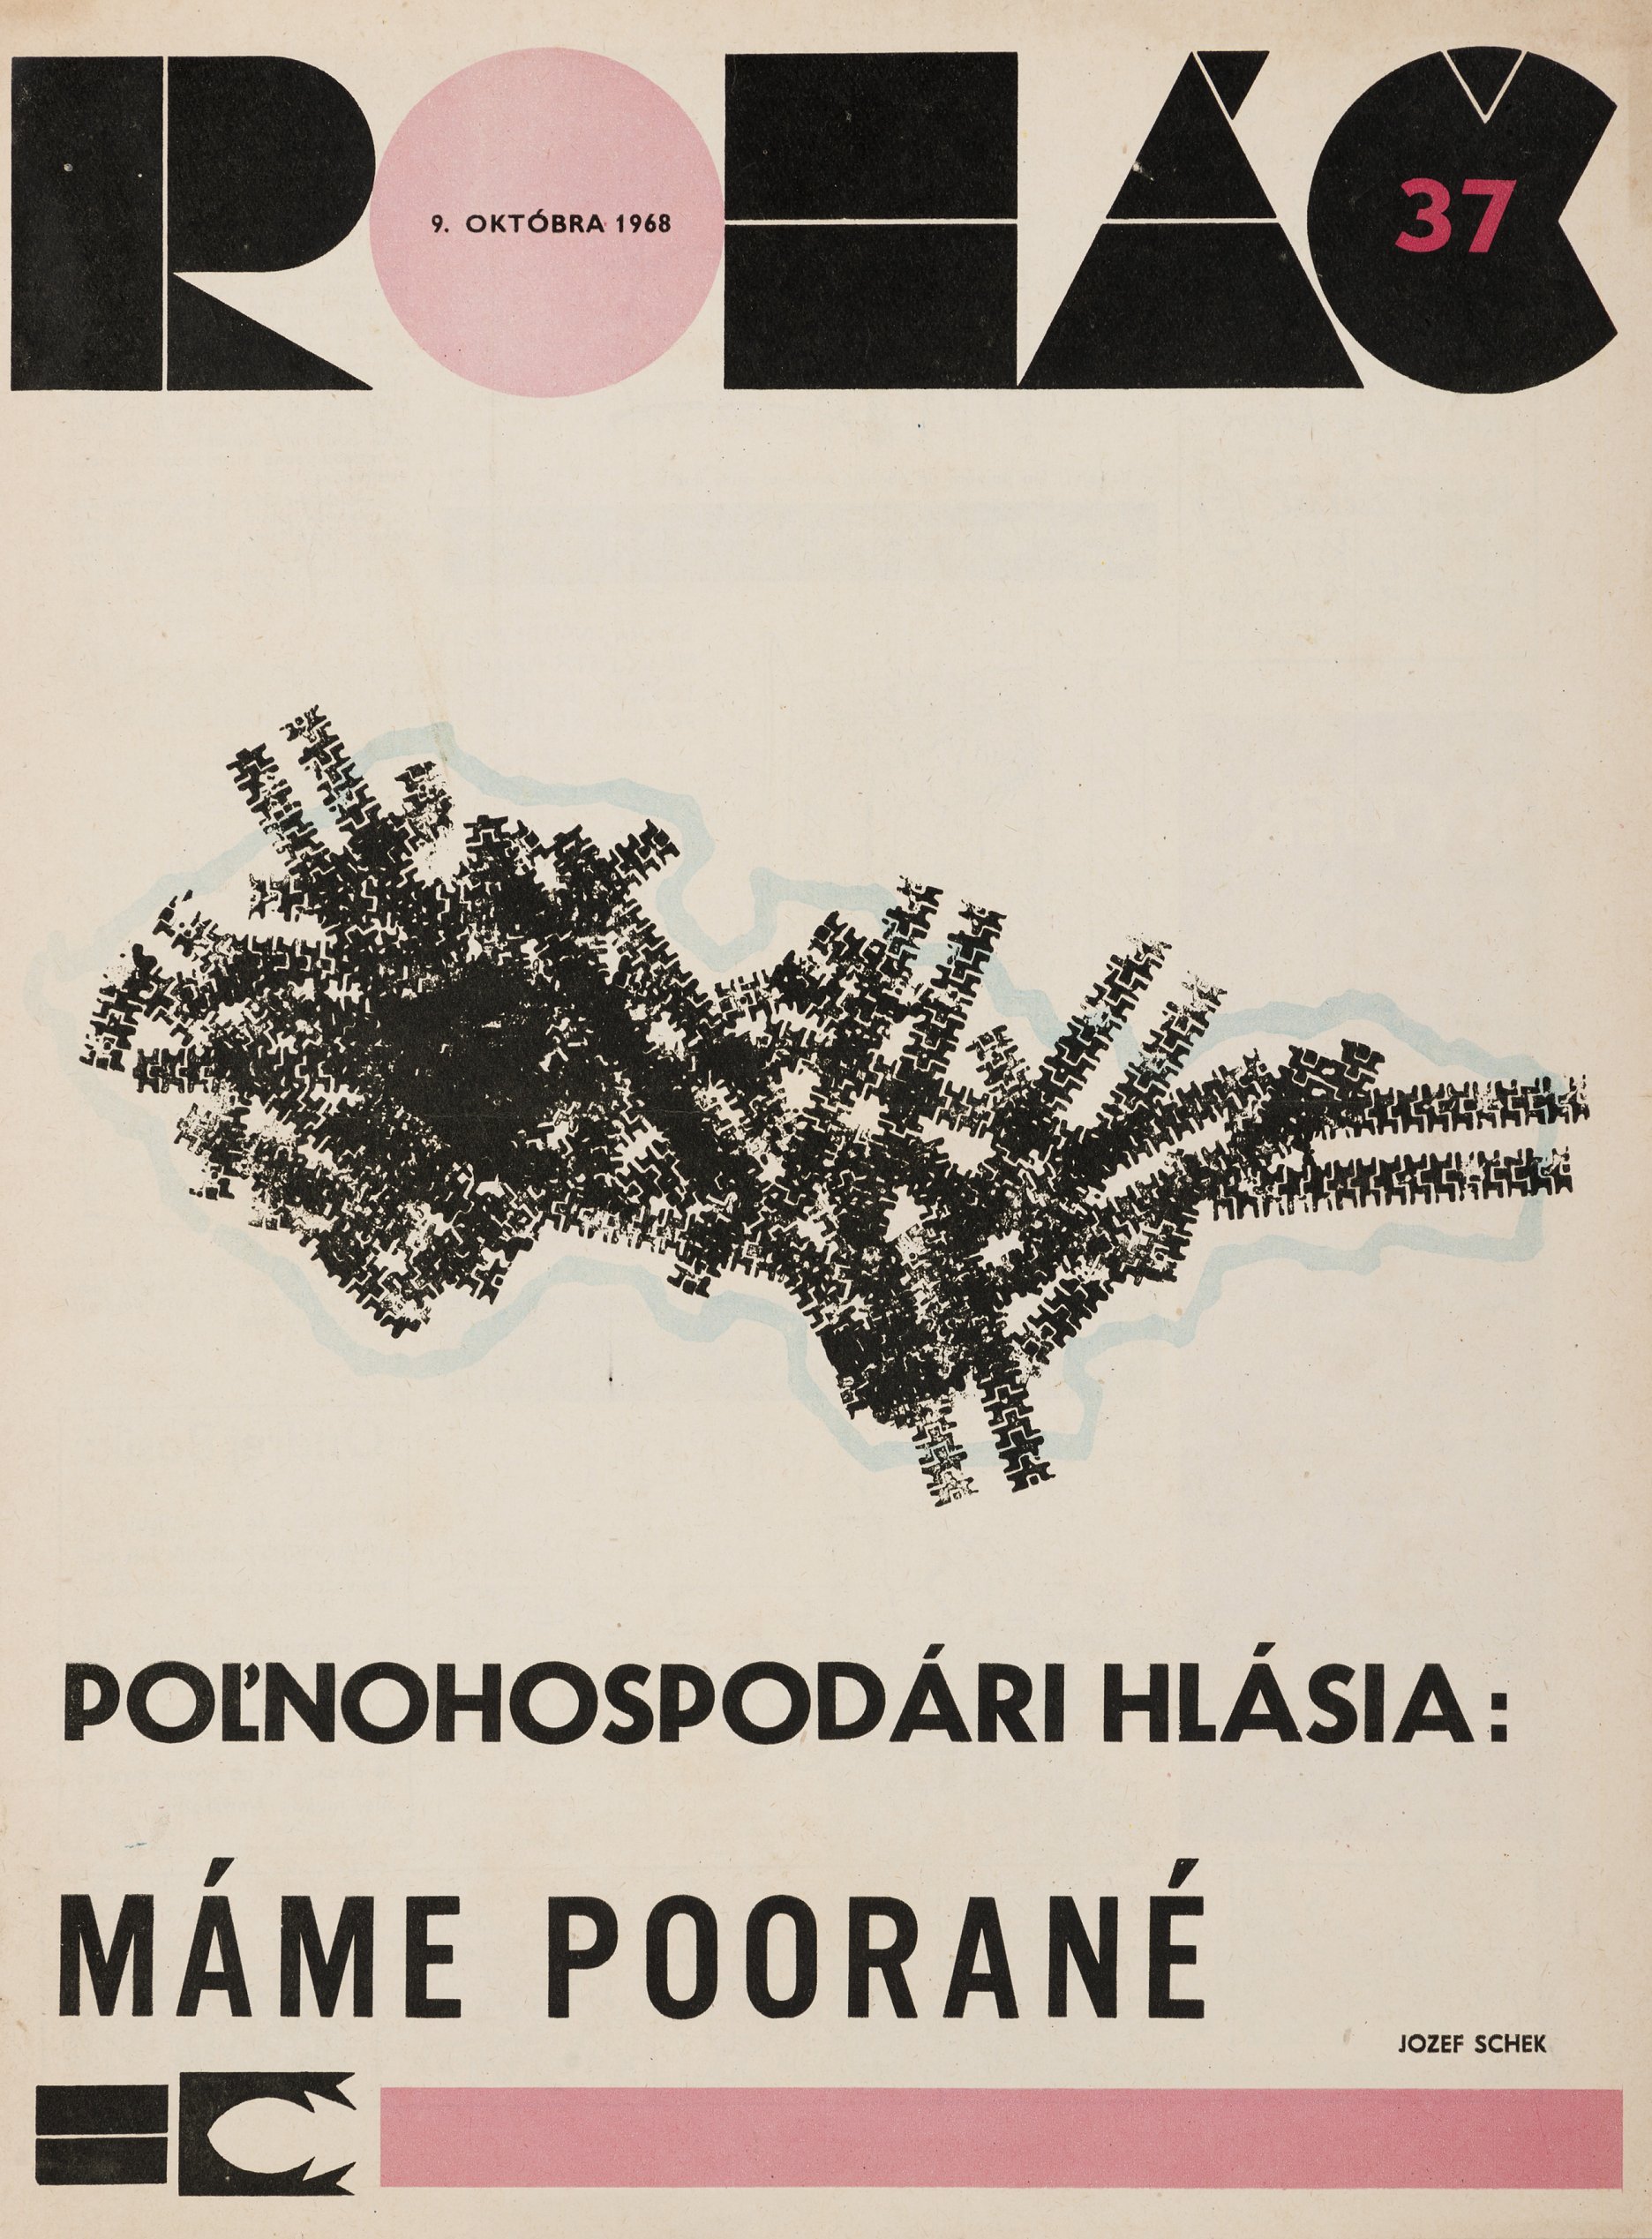 Obálka časopisu Roháč. 9. 10. 1968. (Autor: Jozef Schek). Univerzitná knižnica v Bratislave, Bratislava